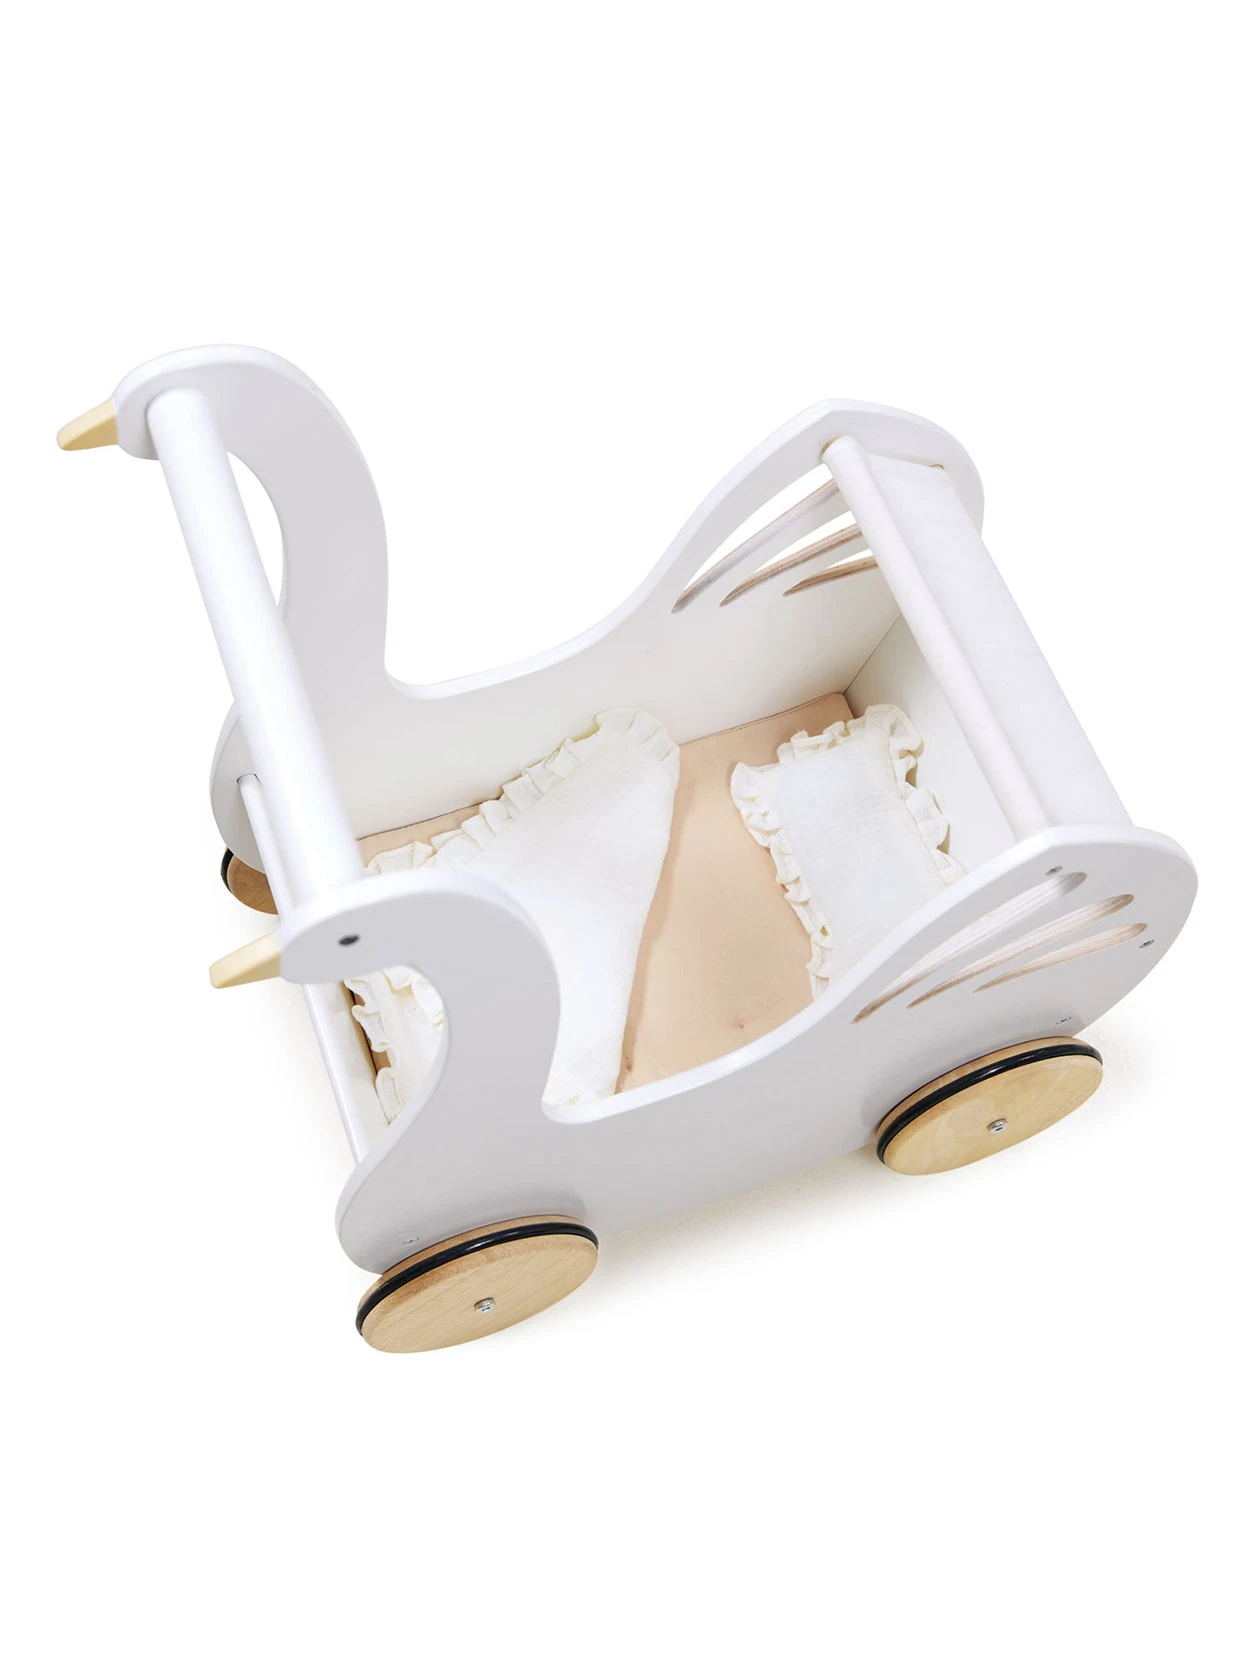 Drewniany wózek dla lalek z akcesoriami Łabędź od Tender Leaf Toys z góry na białym tle.